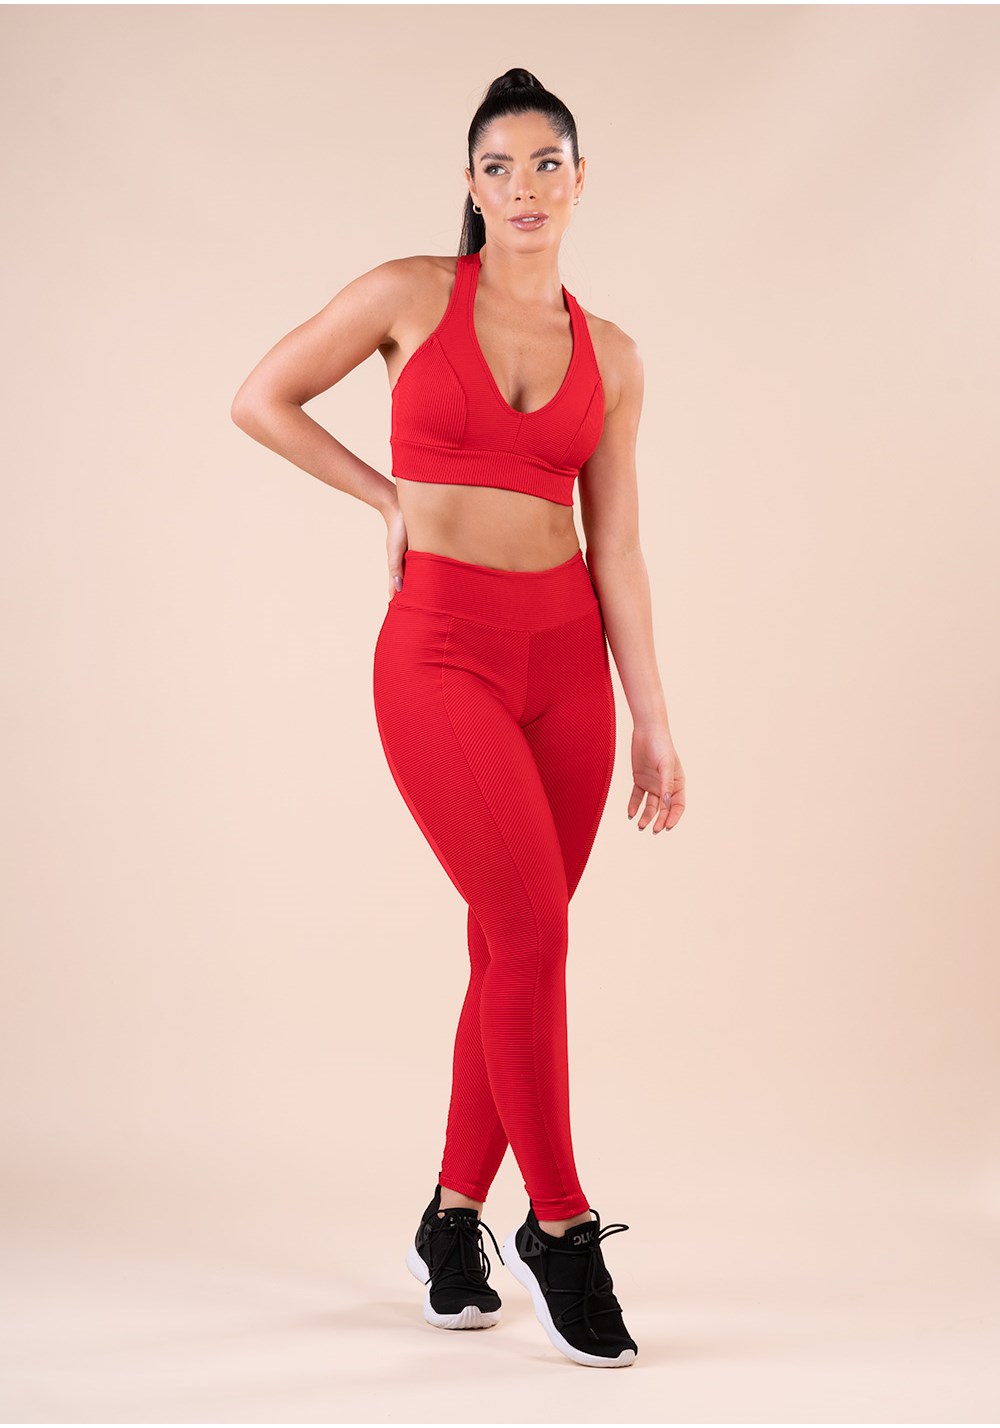 Legging fitness feminina vermelha canelada com recorte action